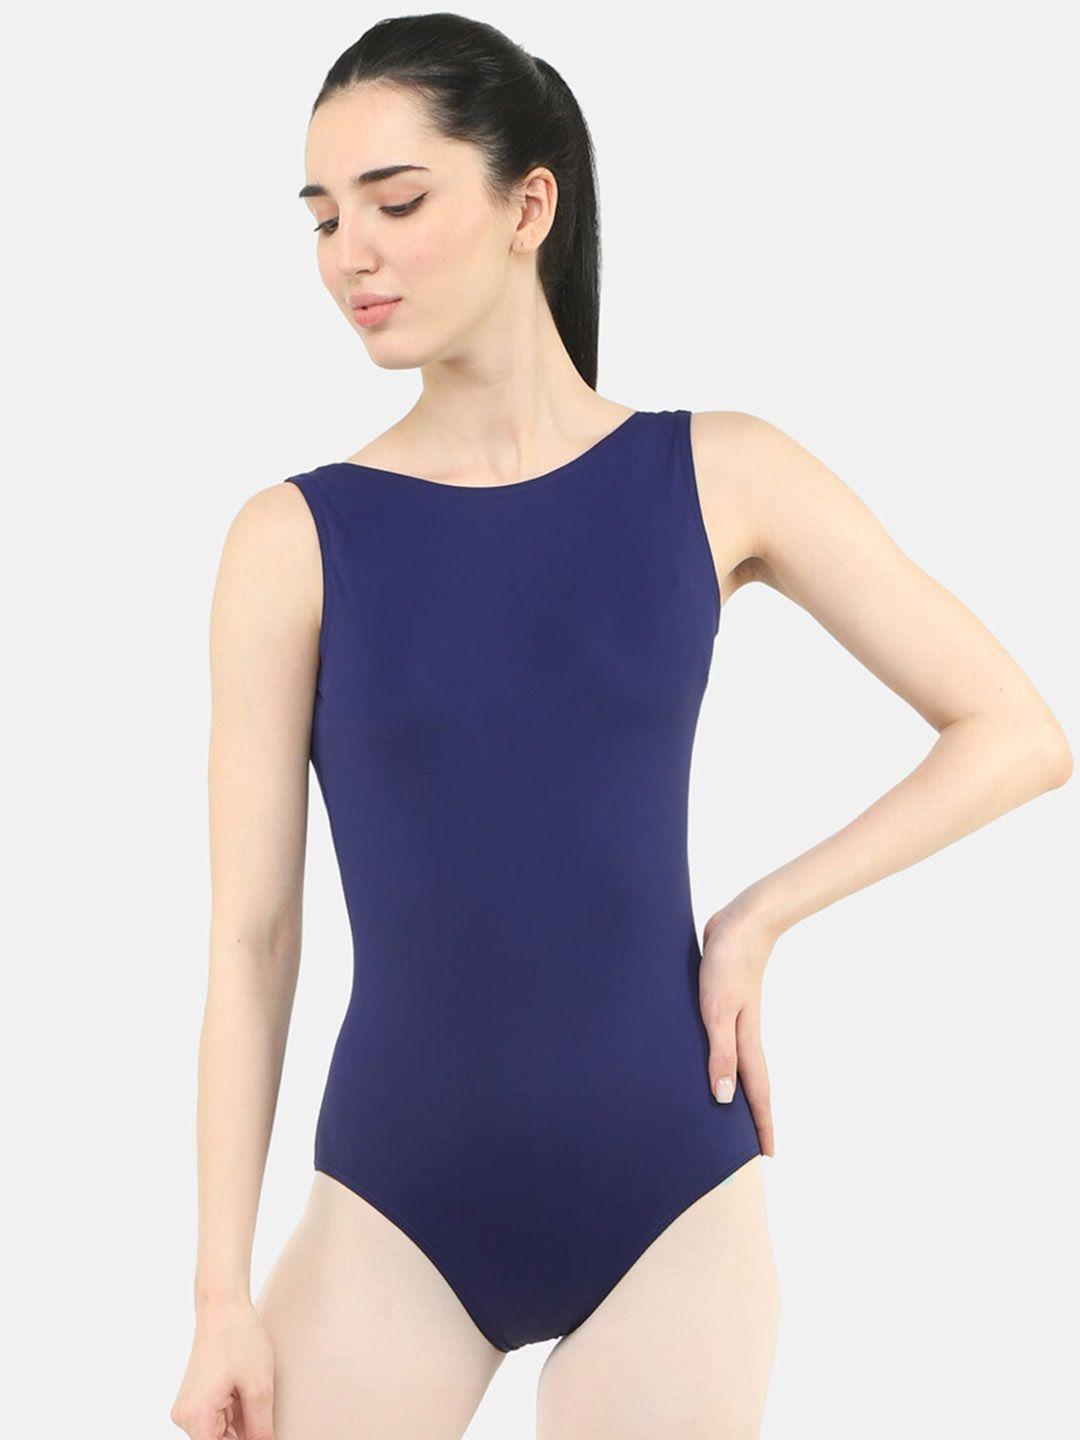 ikaanya women ballet leotard bodysuit